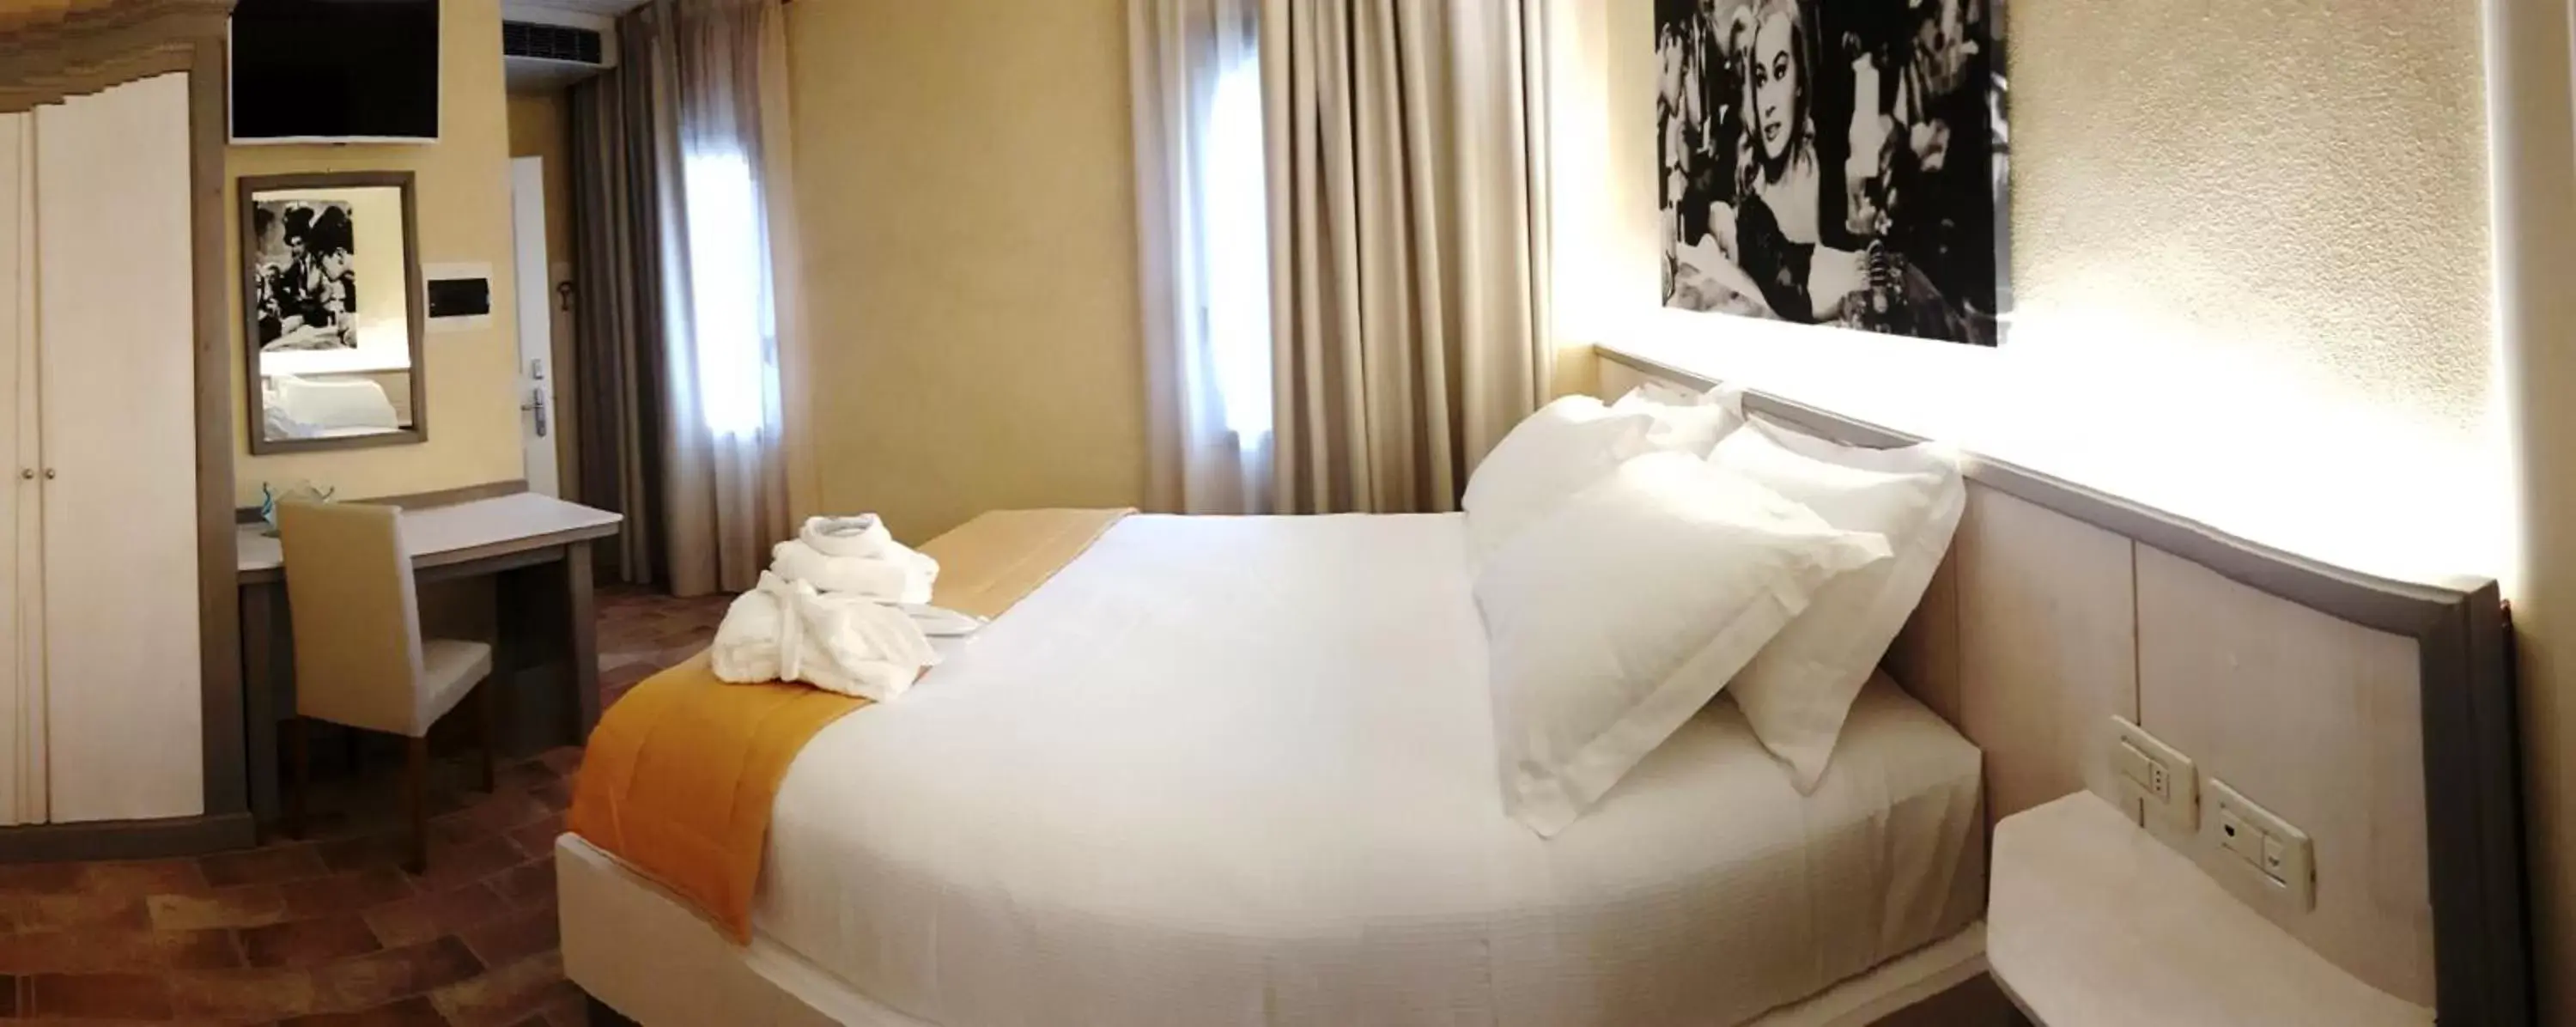 Bed in Hotel Locanda Dolce Vita